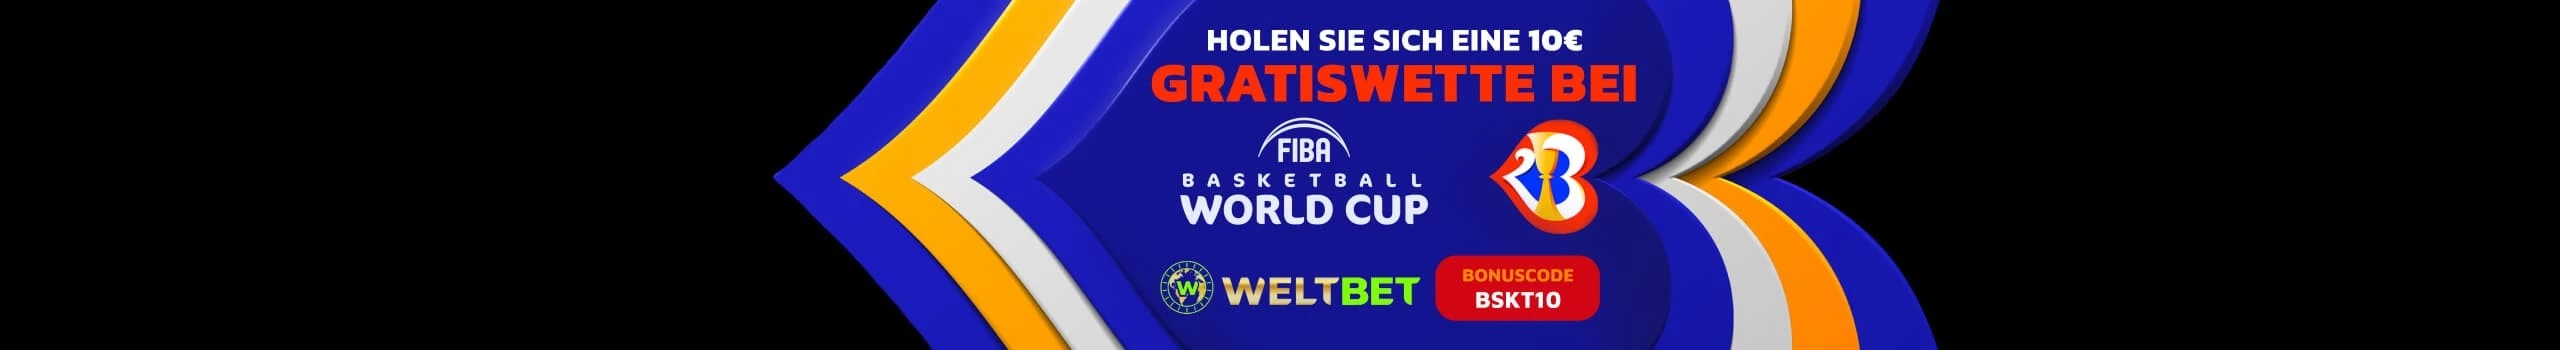 WeltBet Basketball WM Wetten